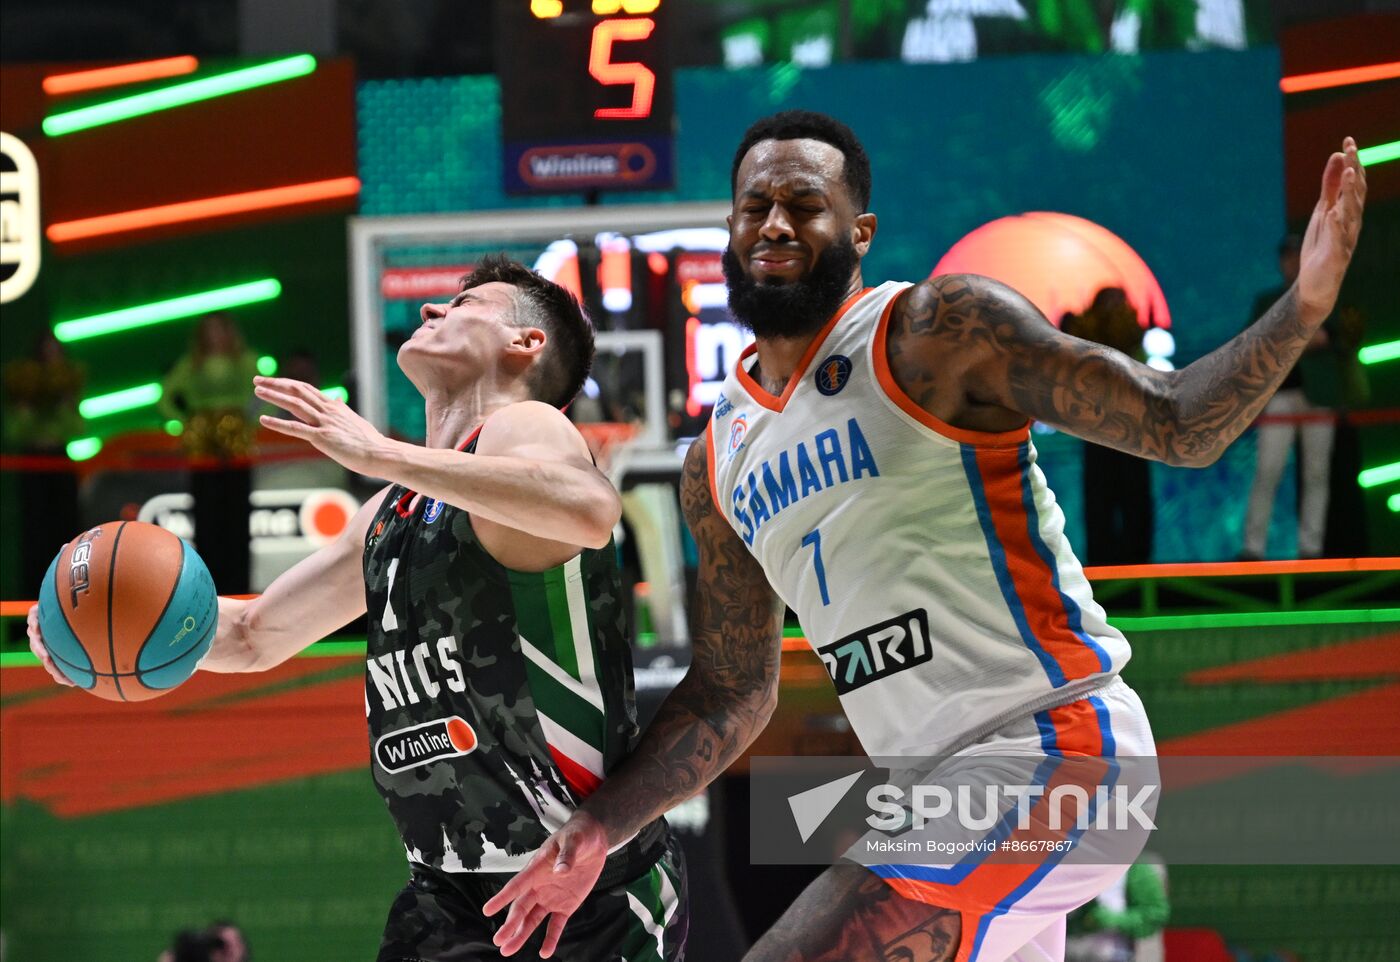 Russia Basketball United League UNICS - Samara